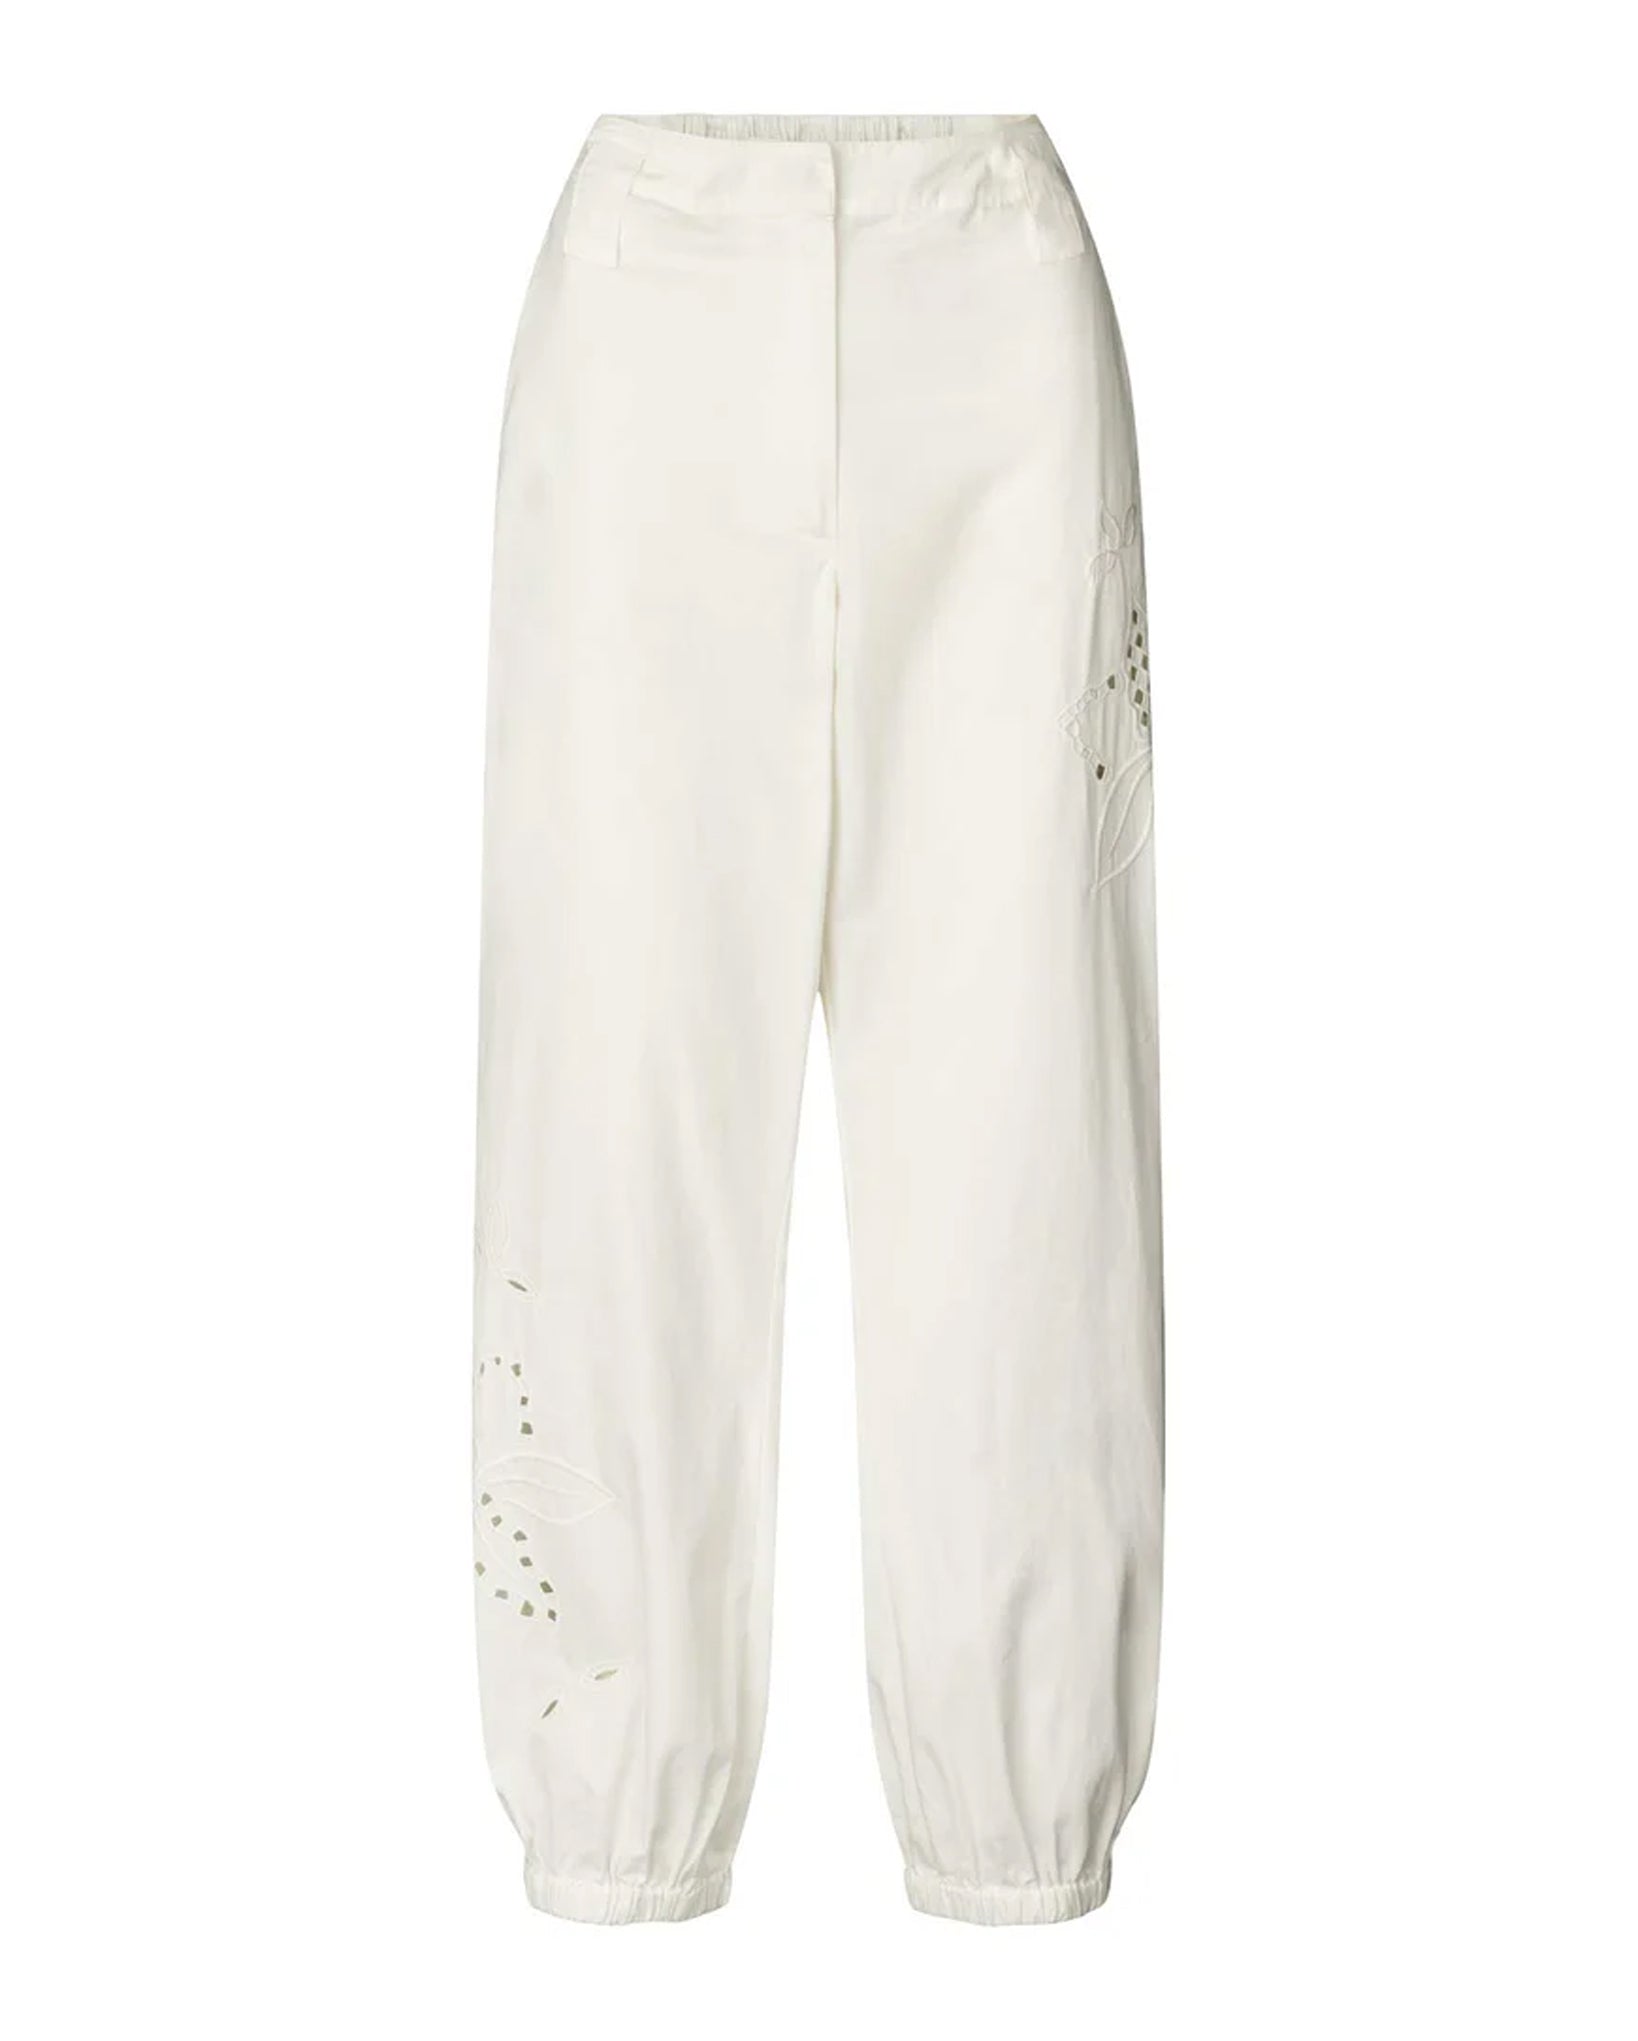 Iman Lotus Lace Pants (Off-White)